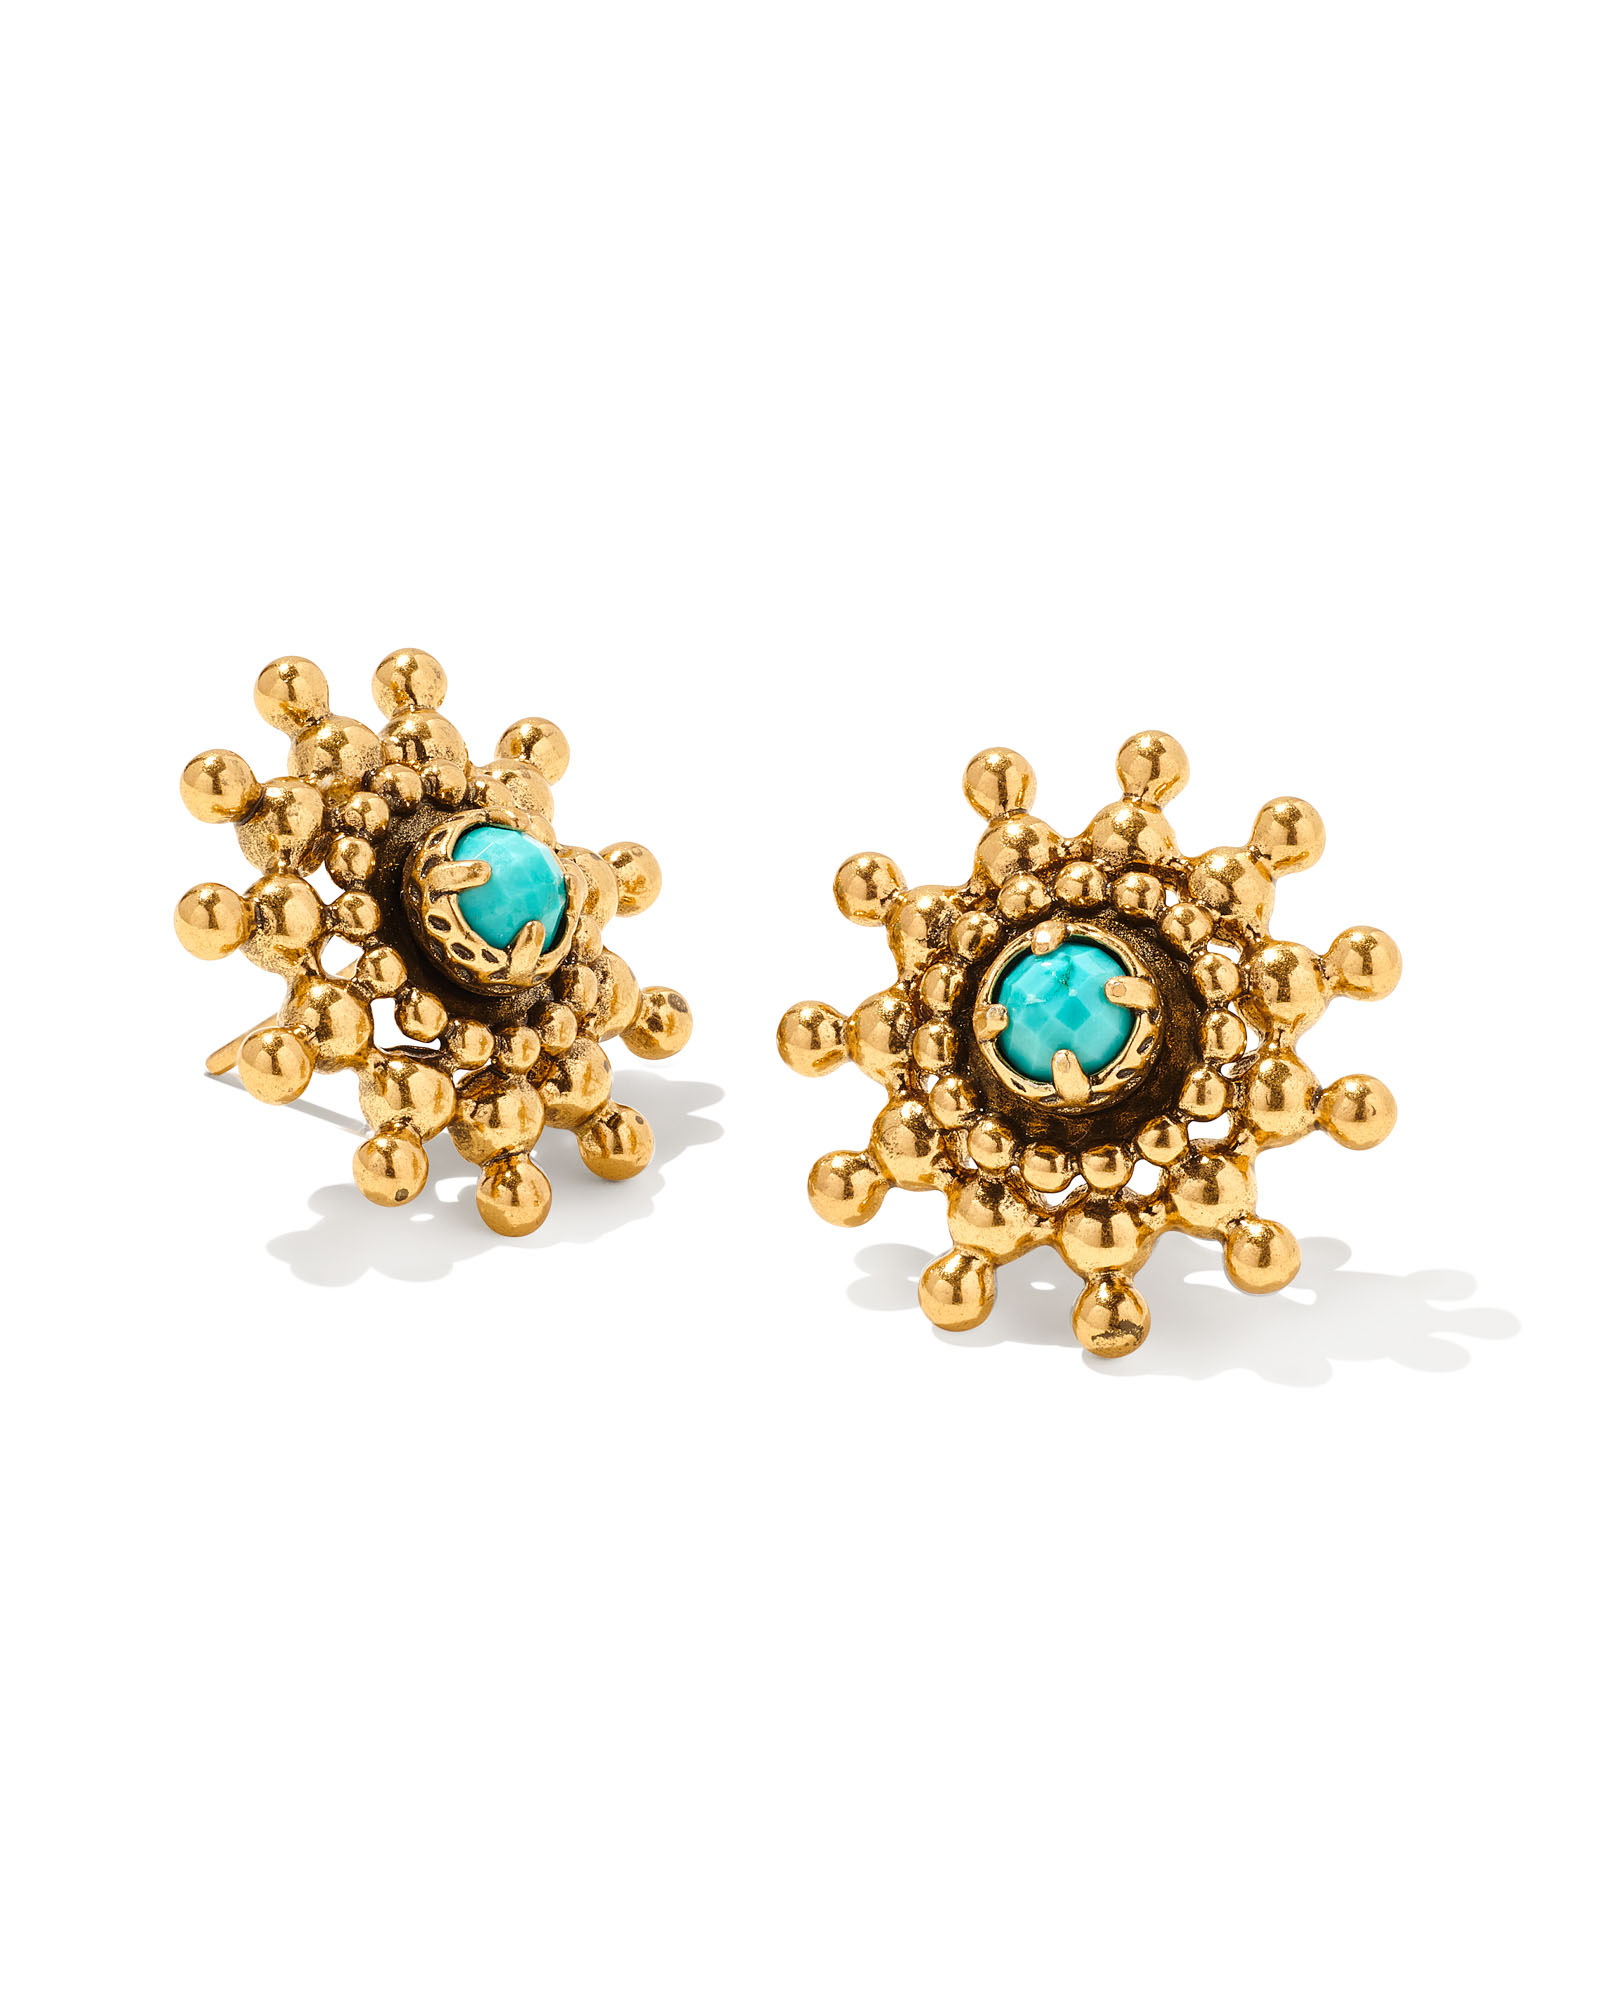 John Lewis & Partners Semi-Precious Stone Stud Earrings, Rose Gold/Moonstone